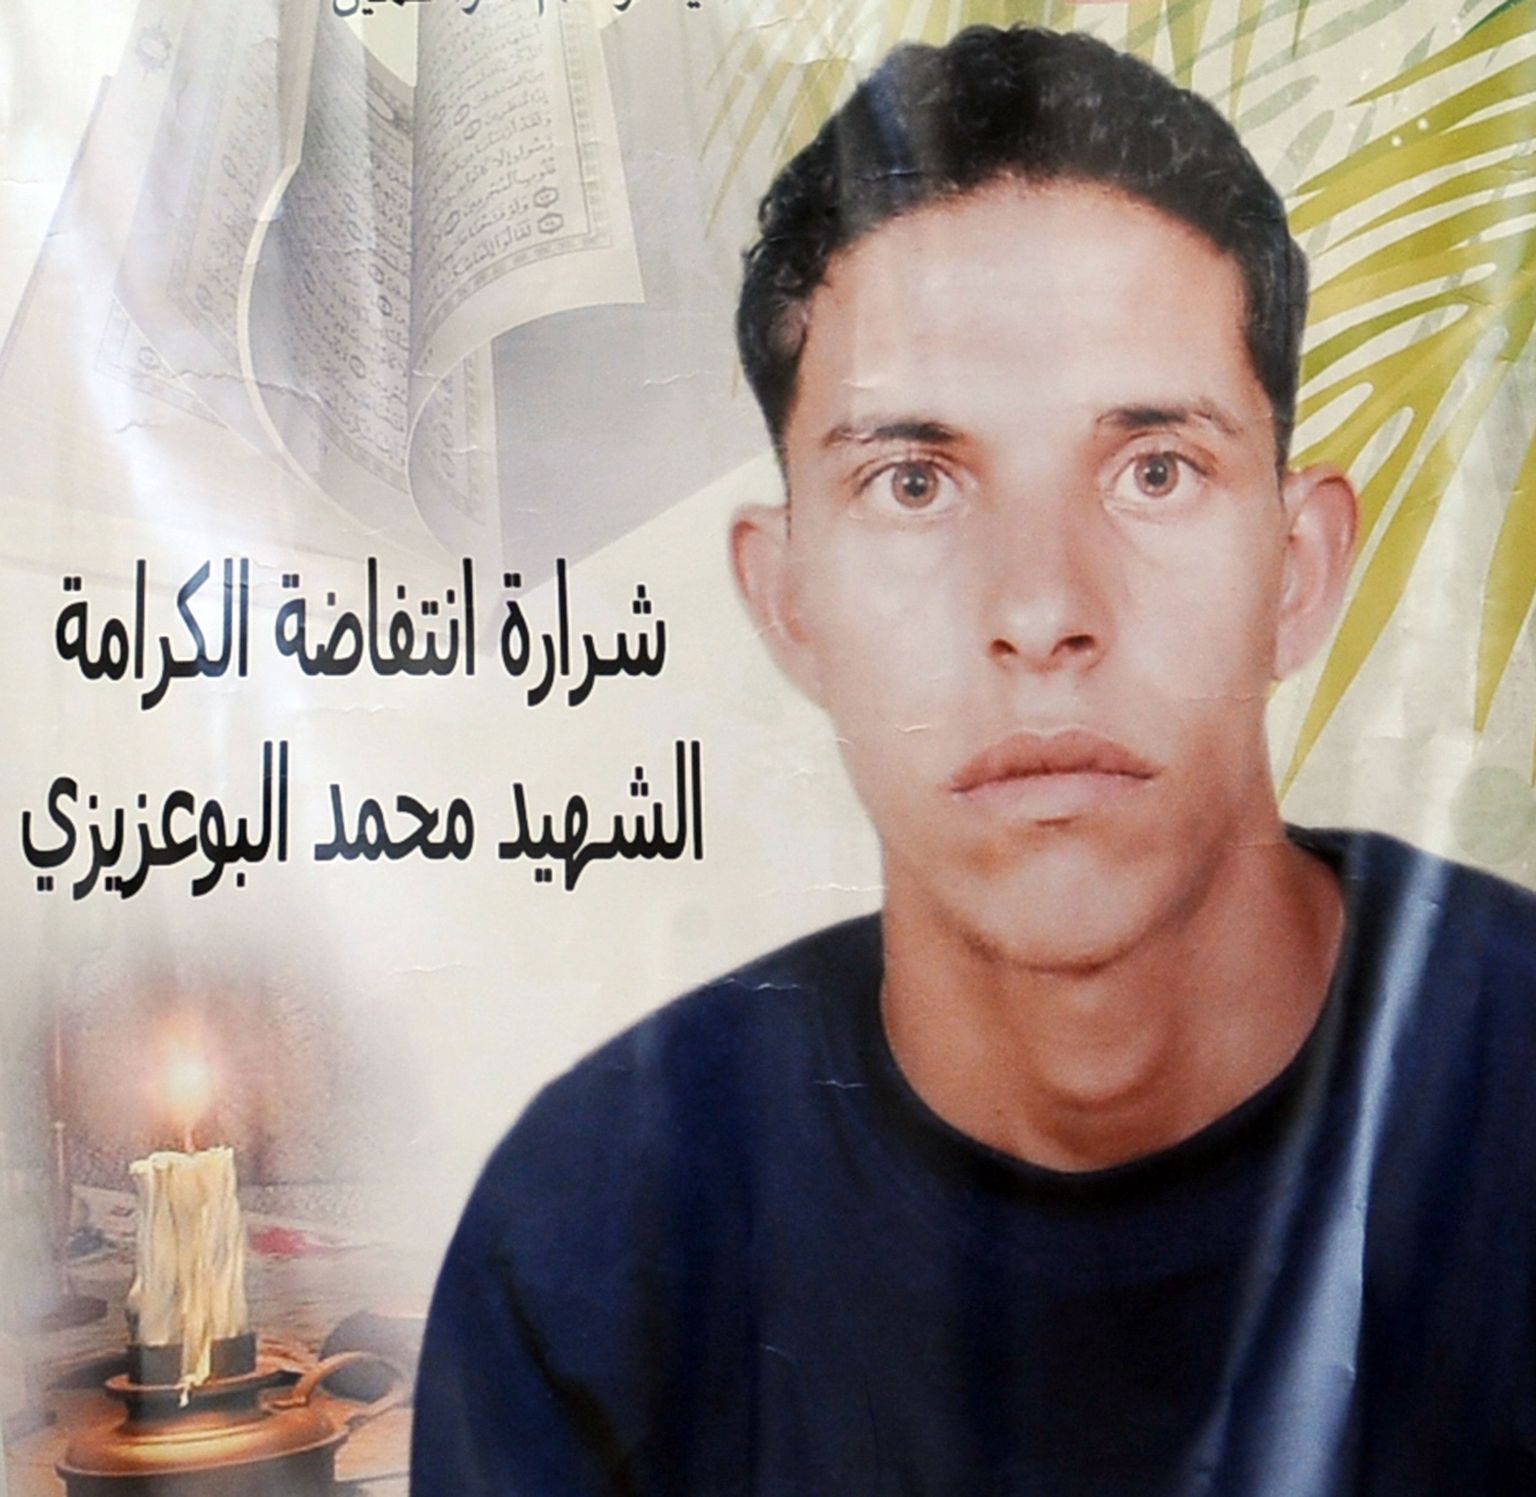 End põlema süüdanud tuneeslane Mohamed Bouazizi, keda saab pidada araabia kevade käivitajaks